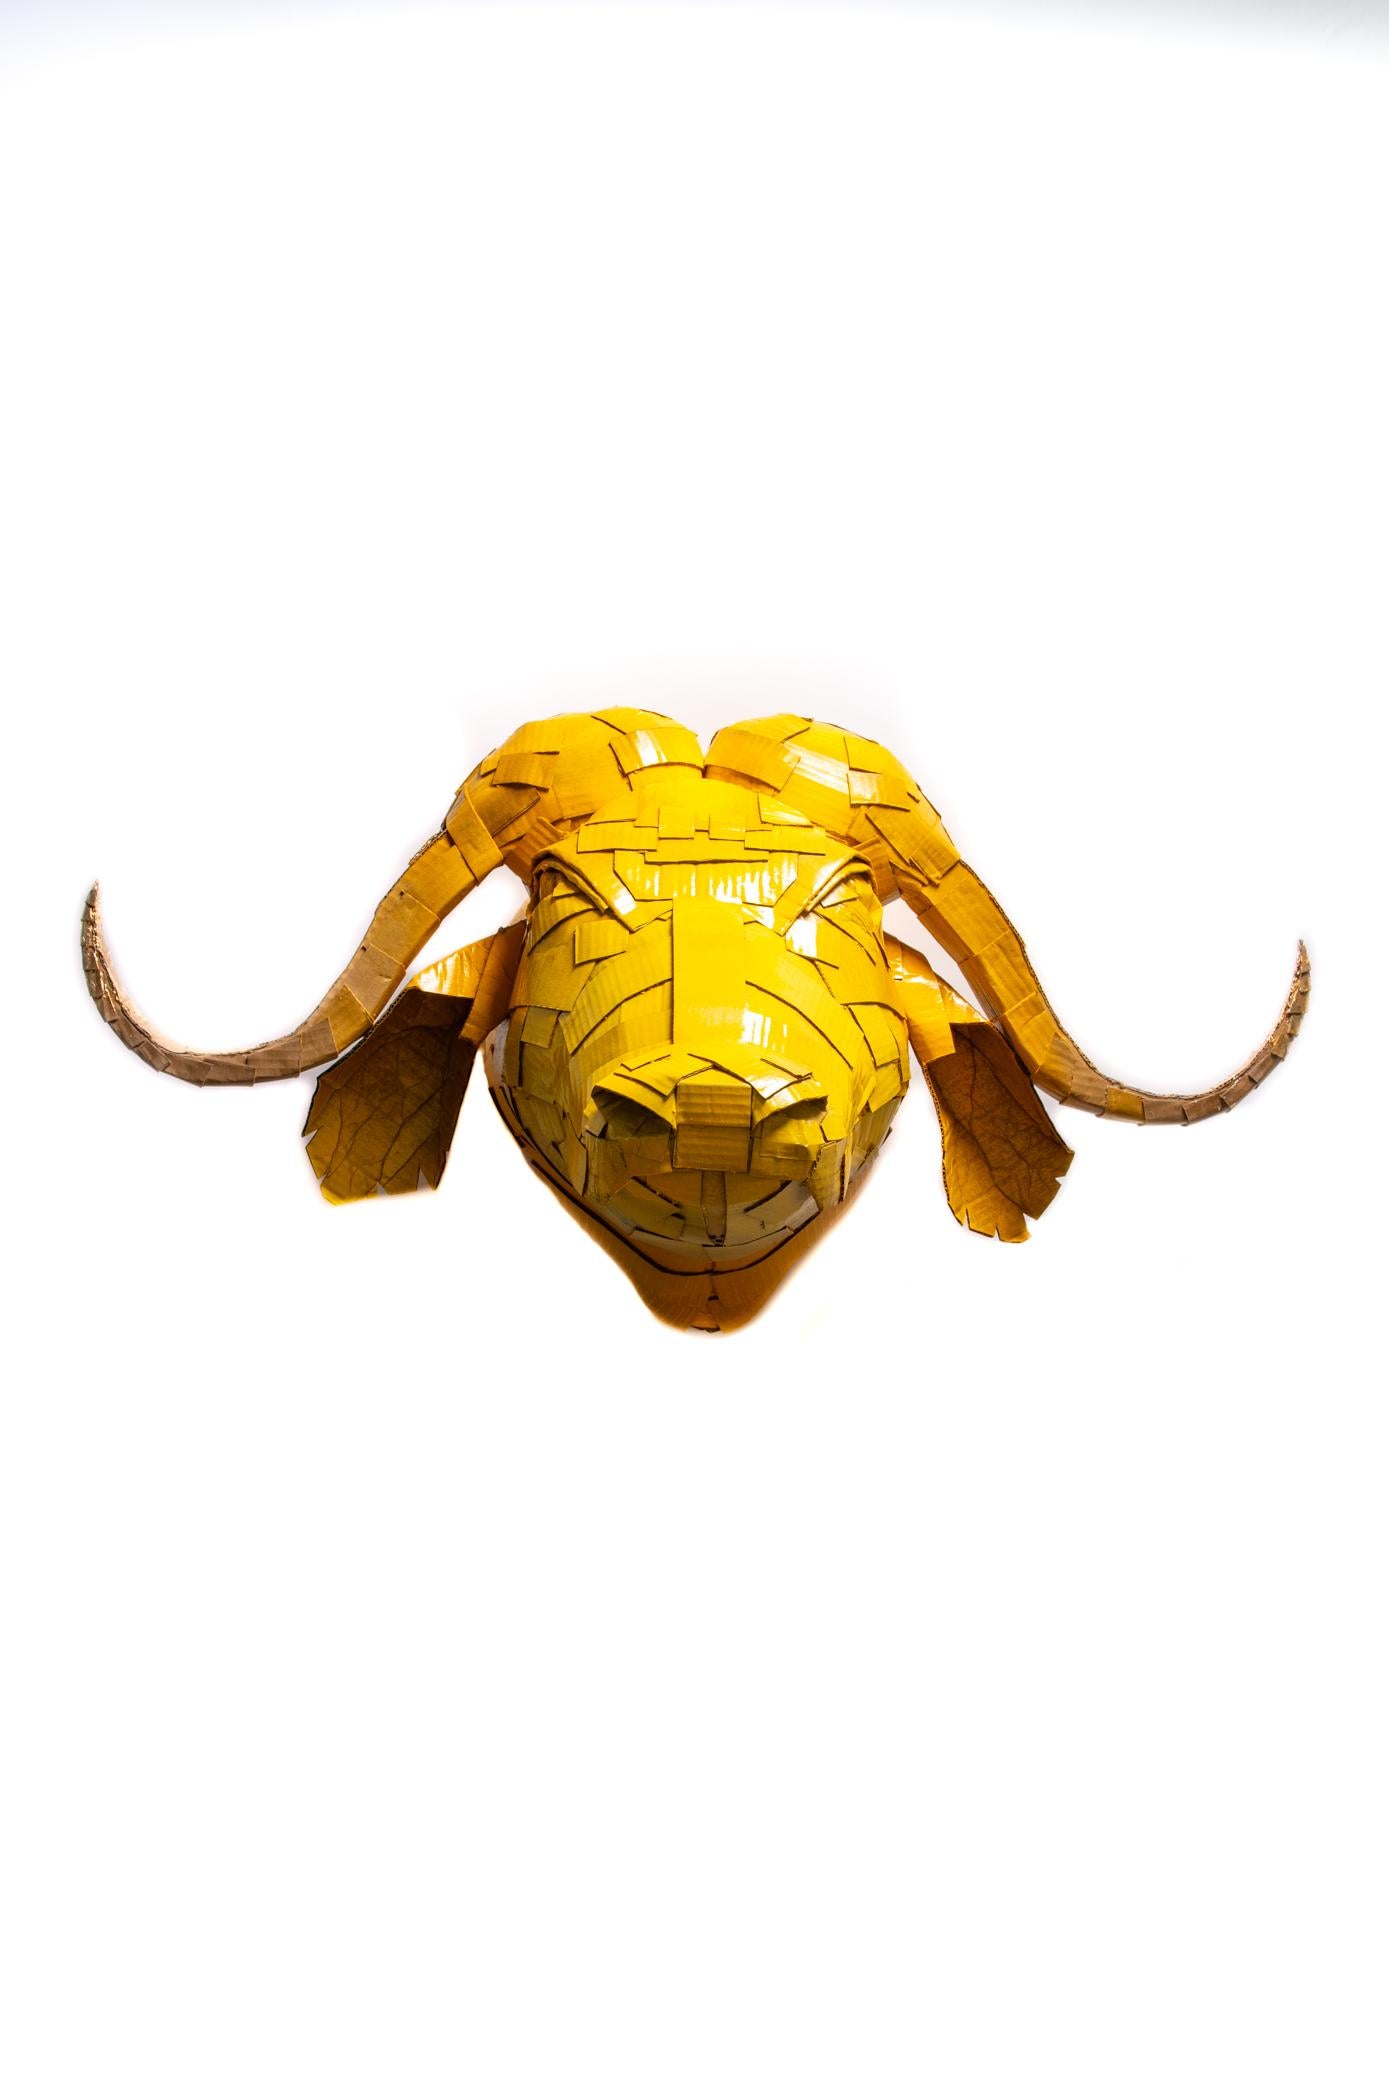 Buffalo n° 2 en jaune caramel avec détails en feuilles d'or - Contemporain Art par Justin King